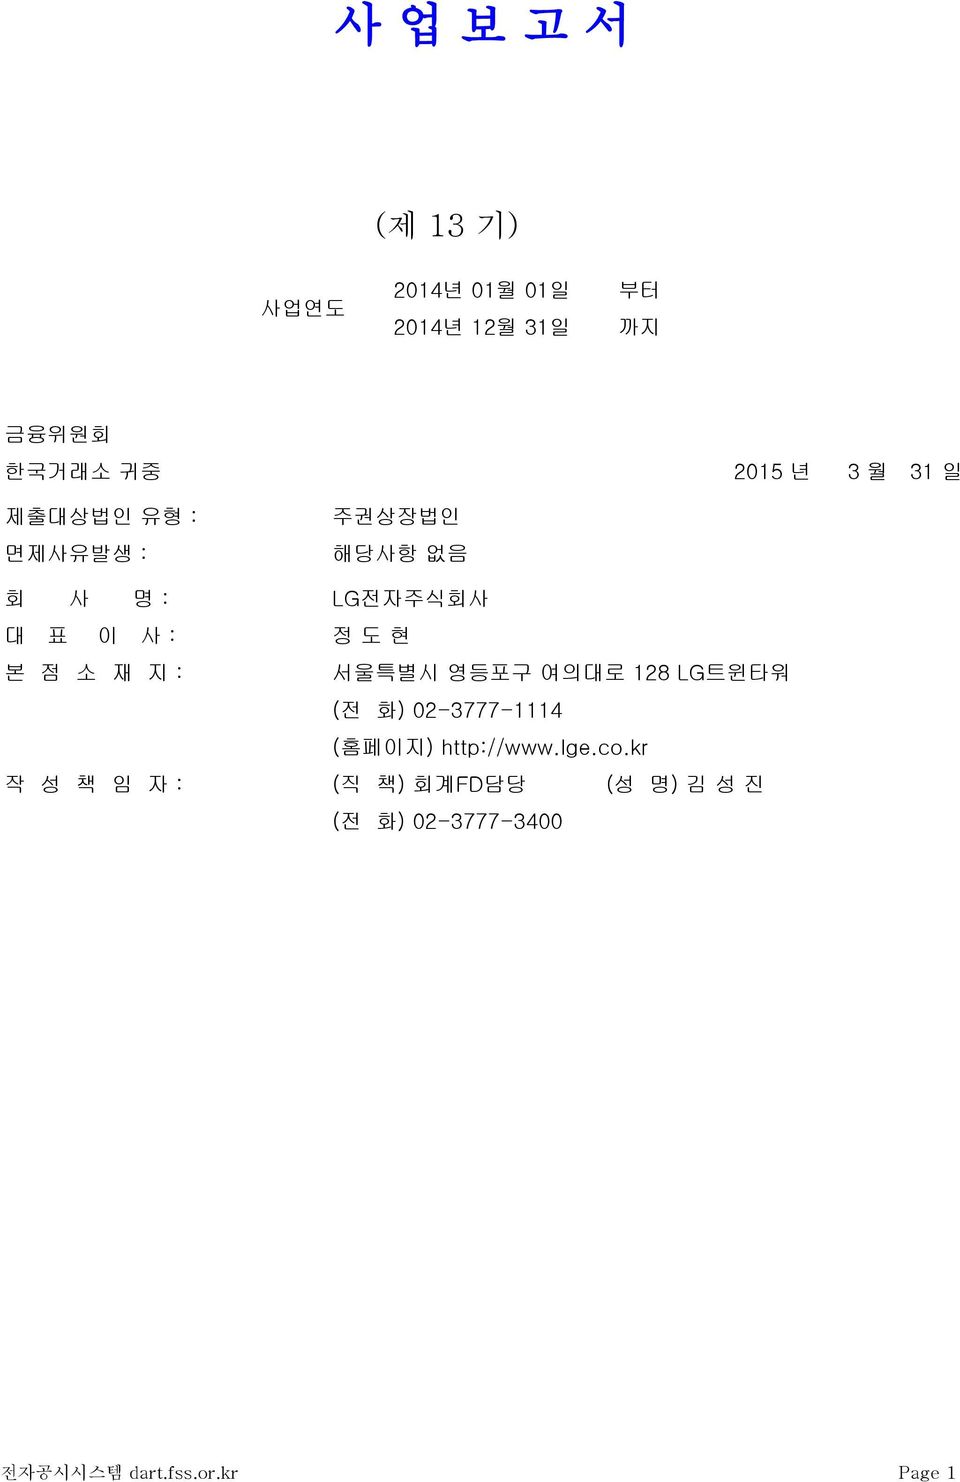 재 지 : 서울특별시 영등포구 여의대로 128 LG트윈타워 (전 화) 02-3777-1114 (홈페이지) http://www.lge.co.